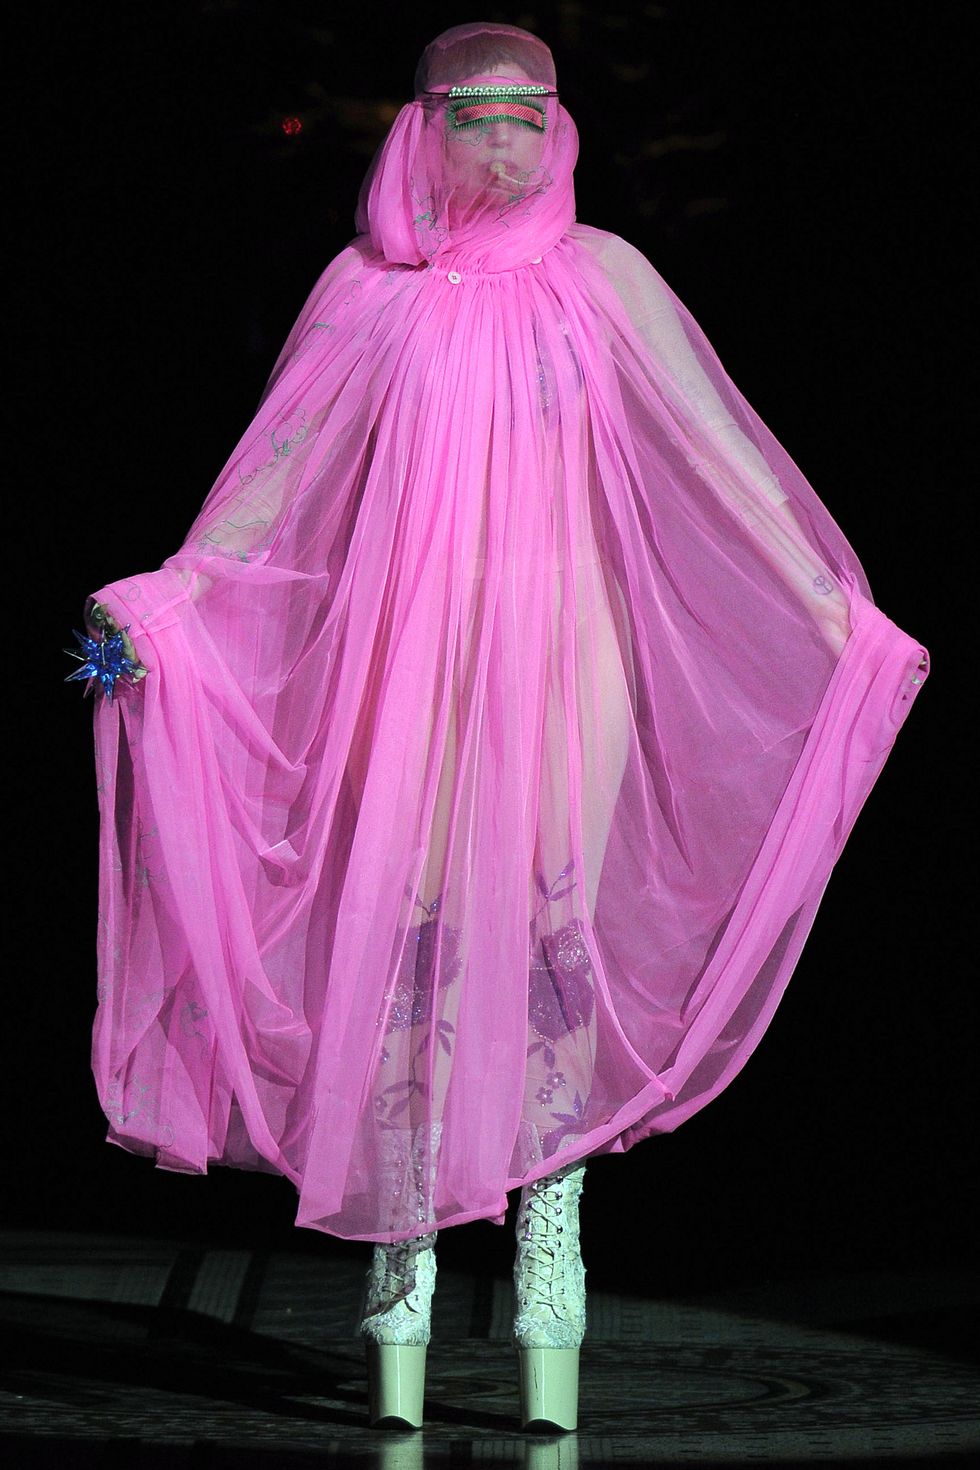 女神卡卡 lady gaga於倫敦時裝週philip treacy 2013春秋大秀